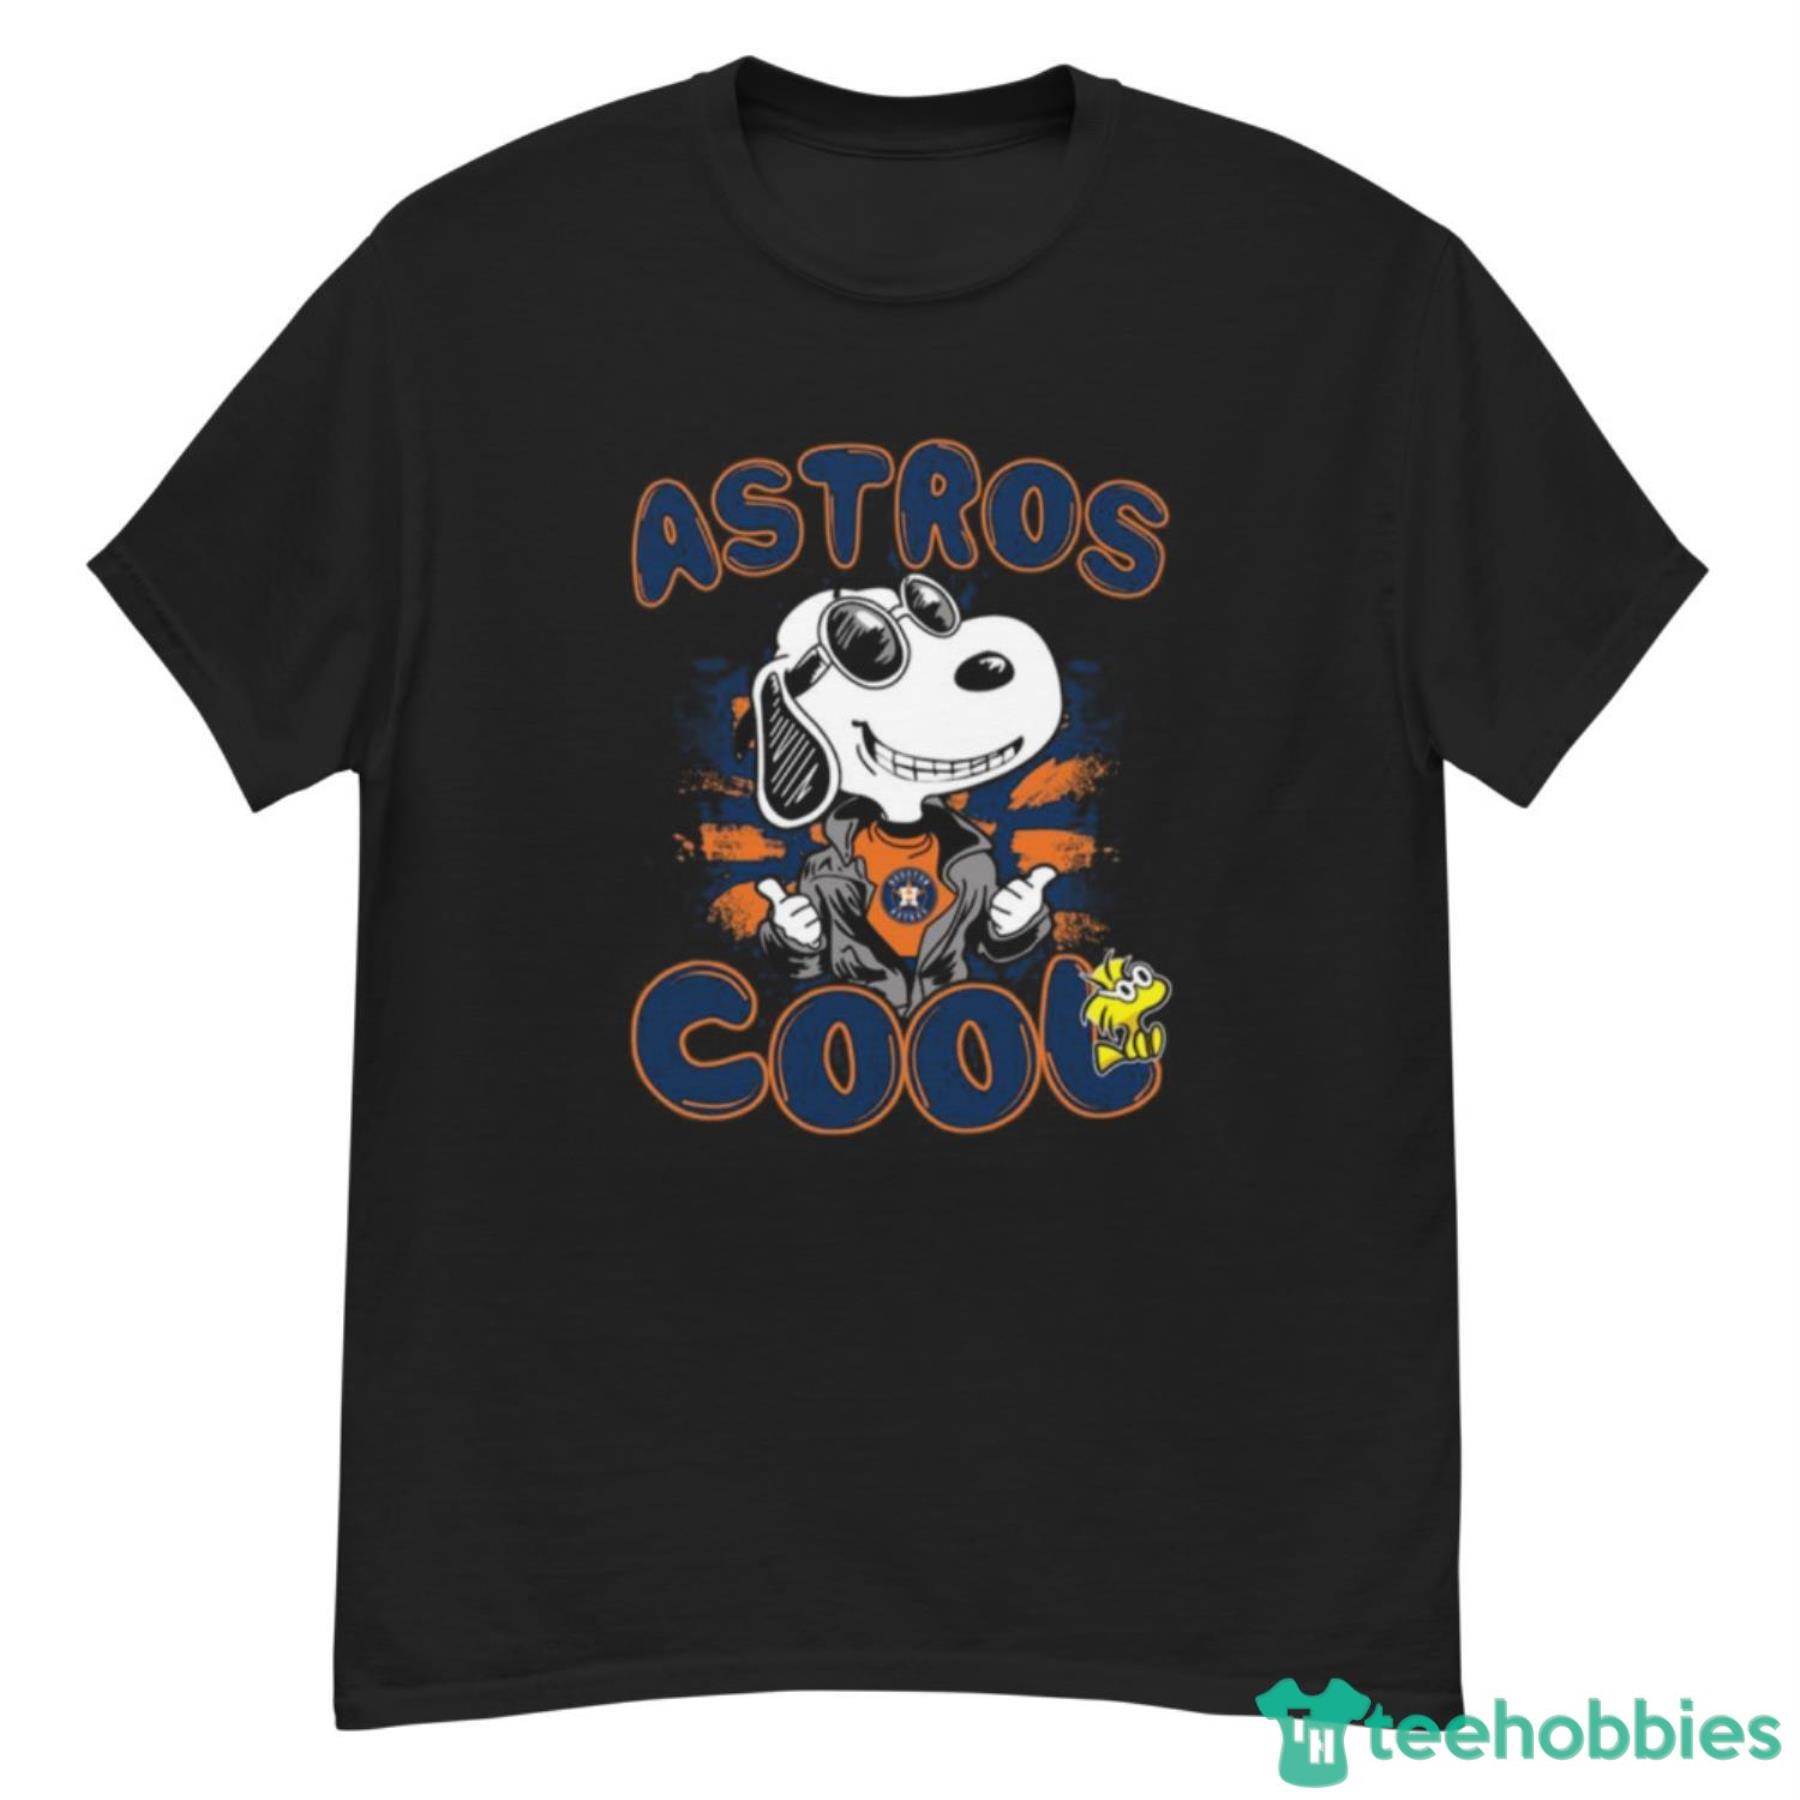 MLB Baseball Houston Astros Cool Snoopy Shirt T Shirt - G500 Men’s Classic T-Shirt